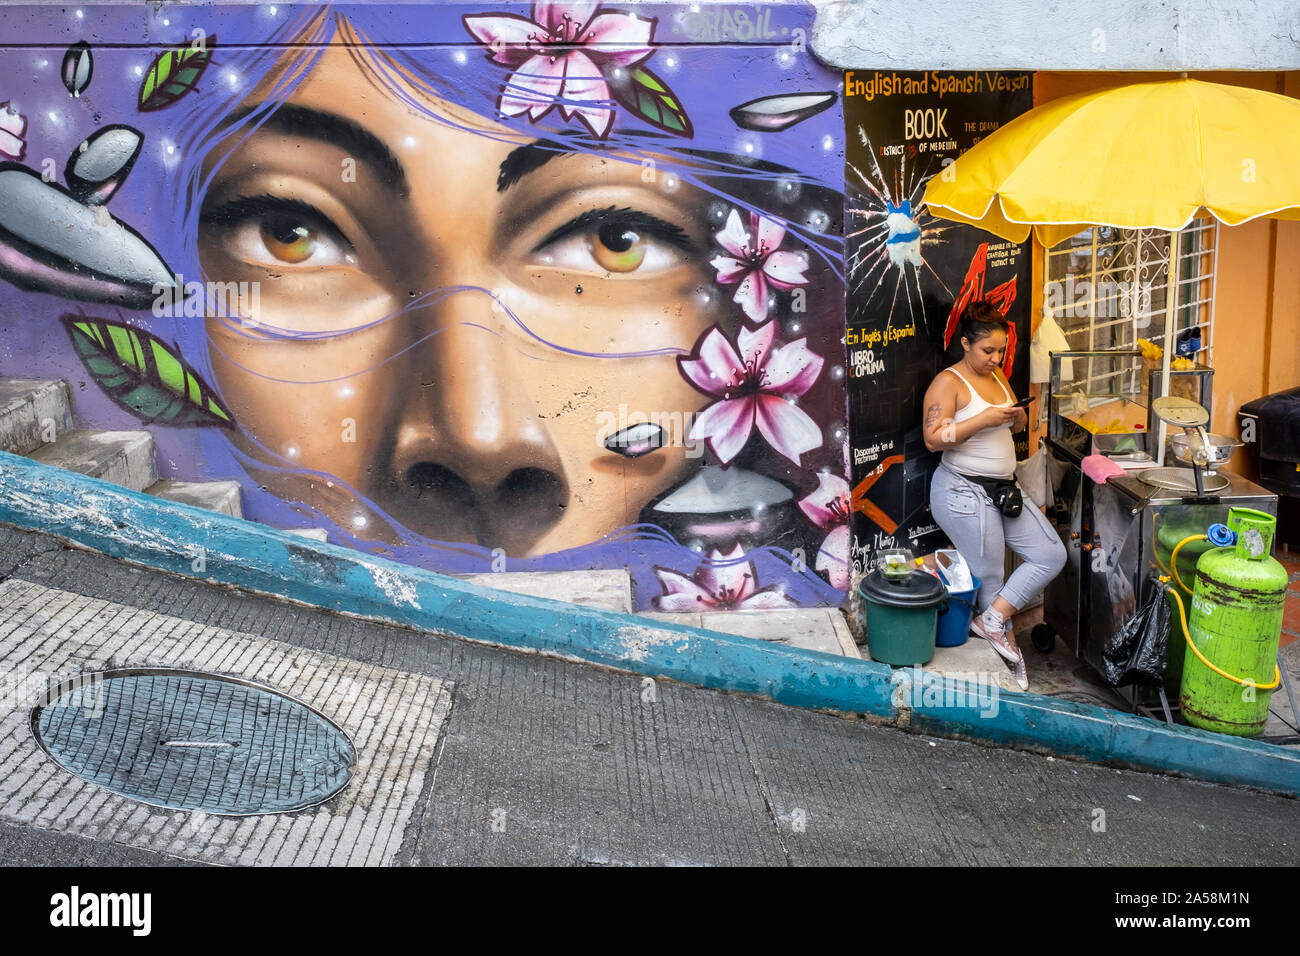 Femme, Street food stand et art de rue, graffiti, fresque, Comuna 13, Medellín, Colombie Banque D'Images